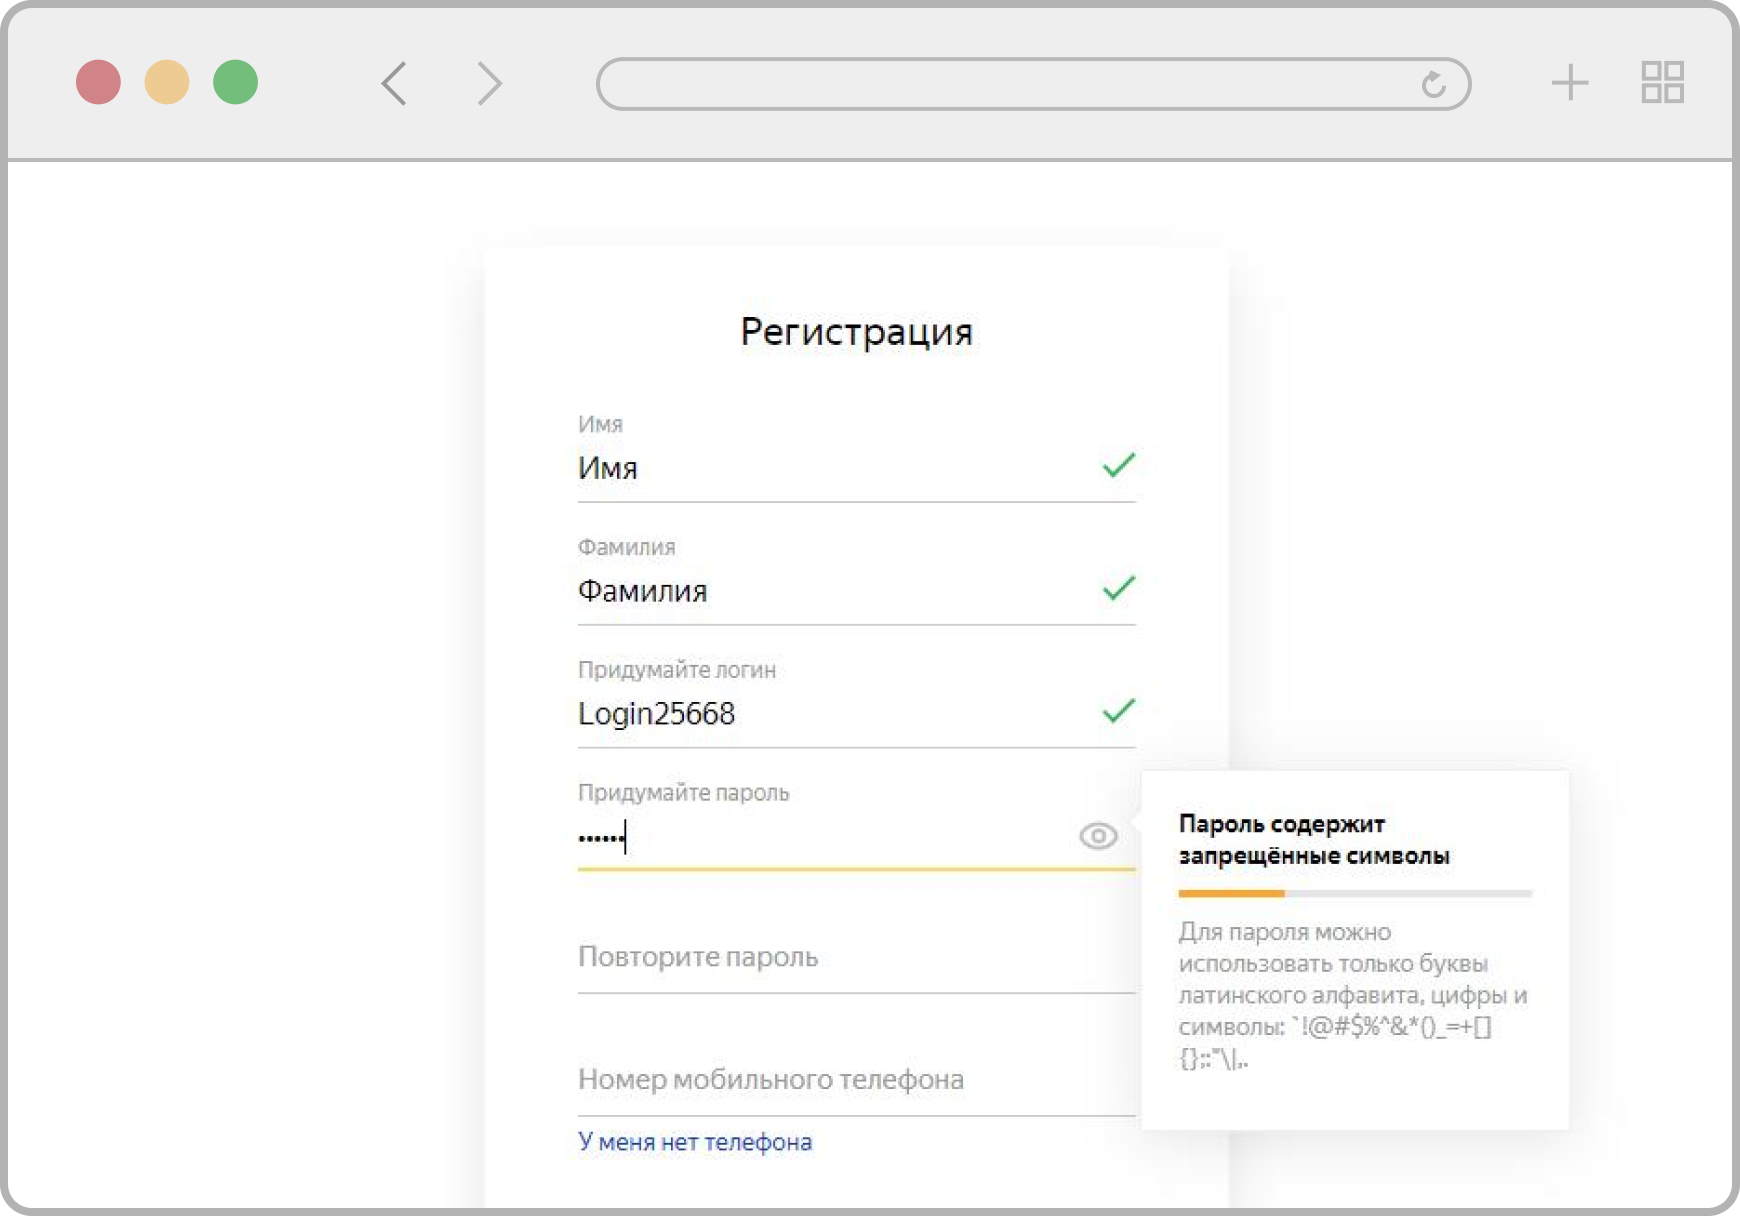 Автопроверка формы регистрации Yandex в случае ввода символов кириллицы указывает на ошибку